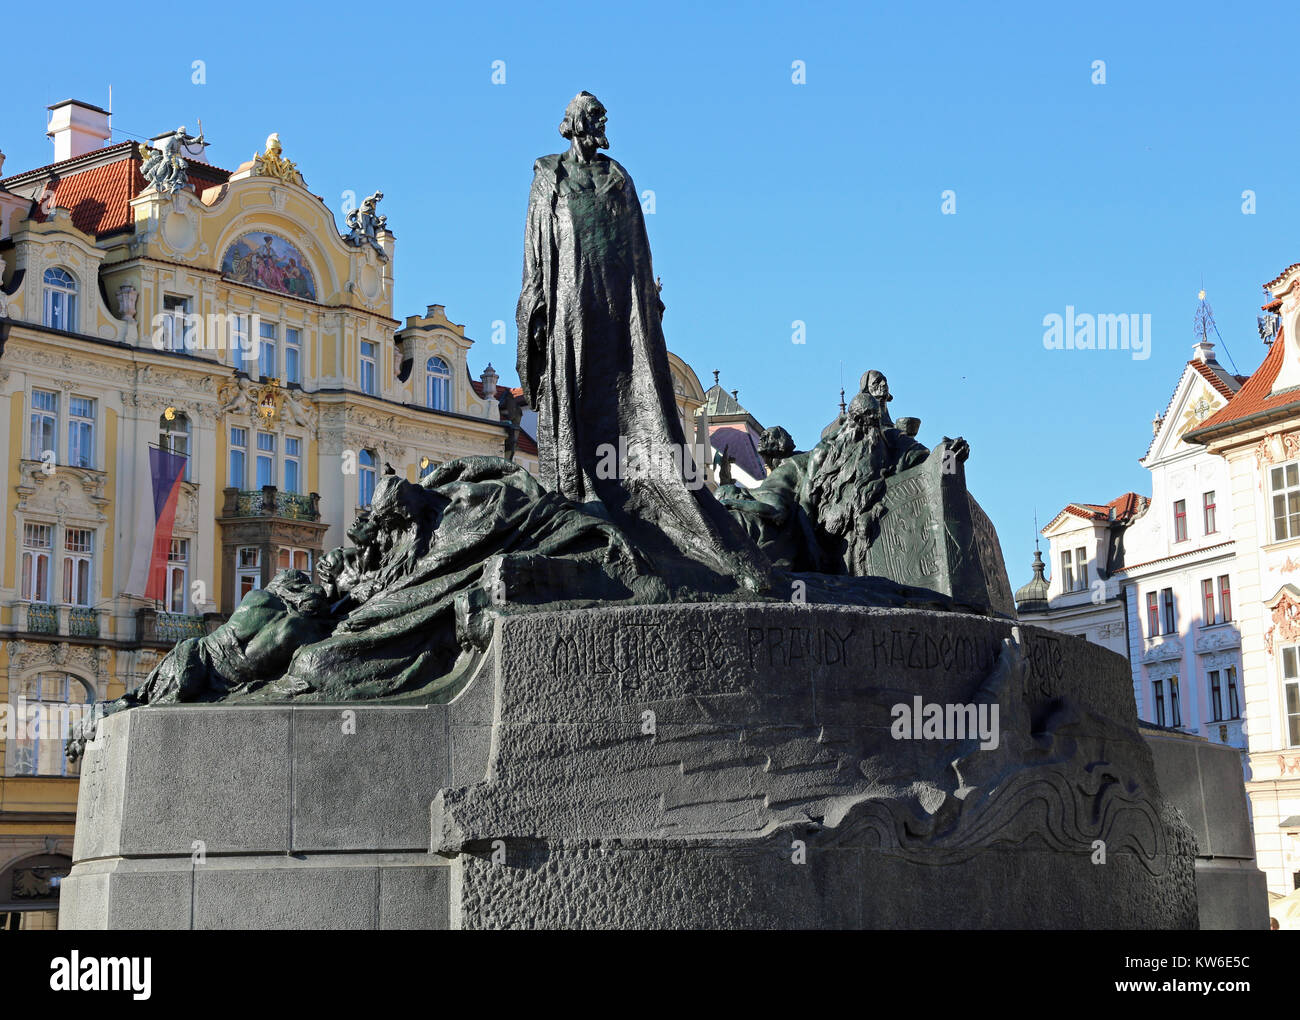 Prague, République tchèque - Le 23 août 2016 : Mémorial de Jan Hus sur la place de la vieille ville, construite en 1915. Jan Hus était un linguiste tchèque, la religion, l'écrivain philoso Banque D'Images